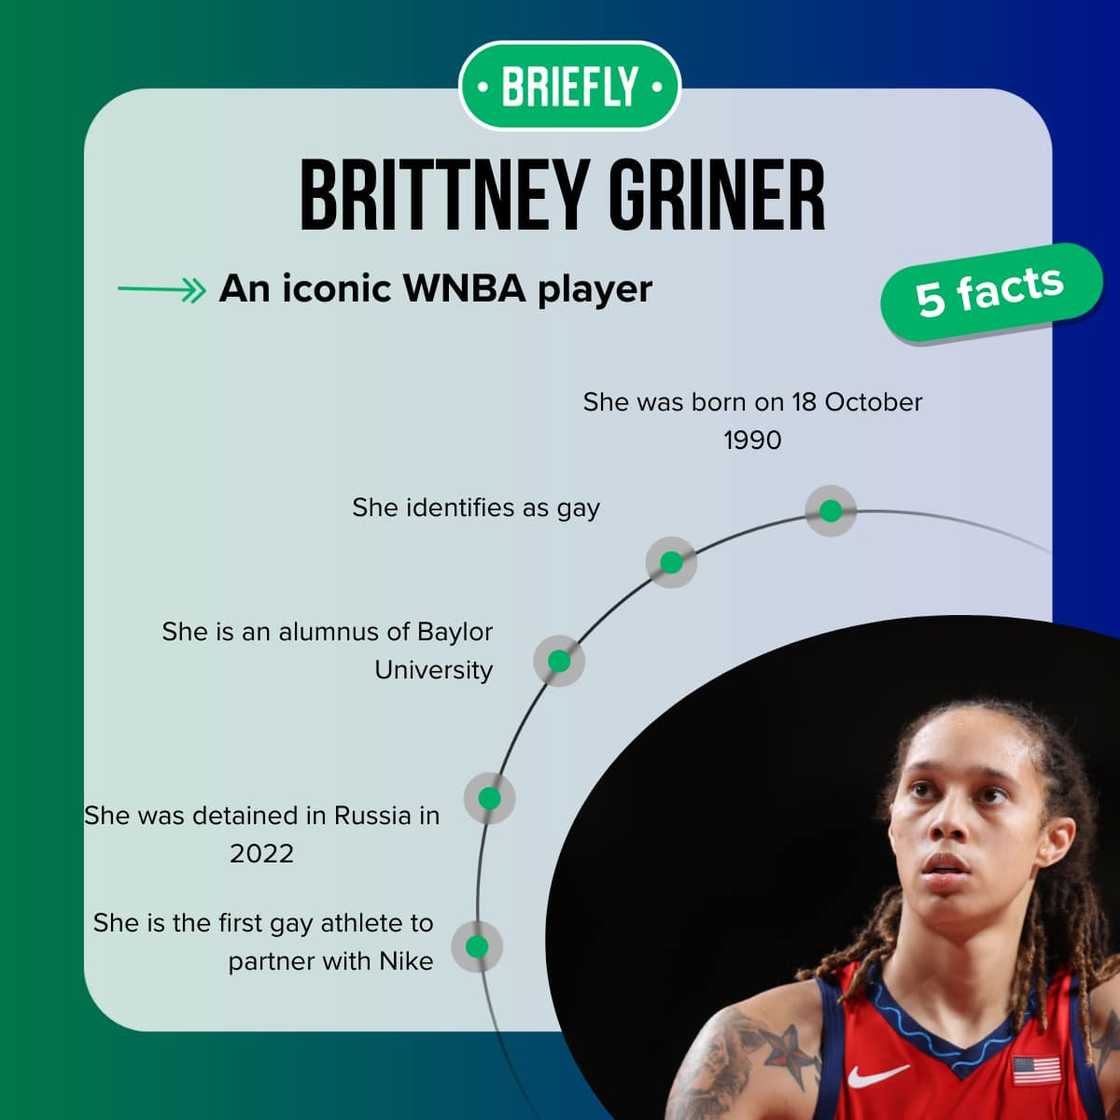 Brittney Griner's facts